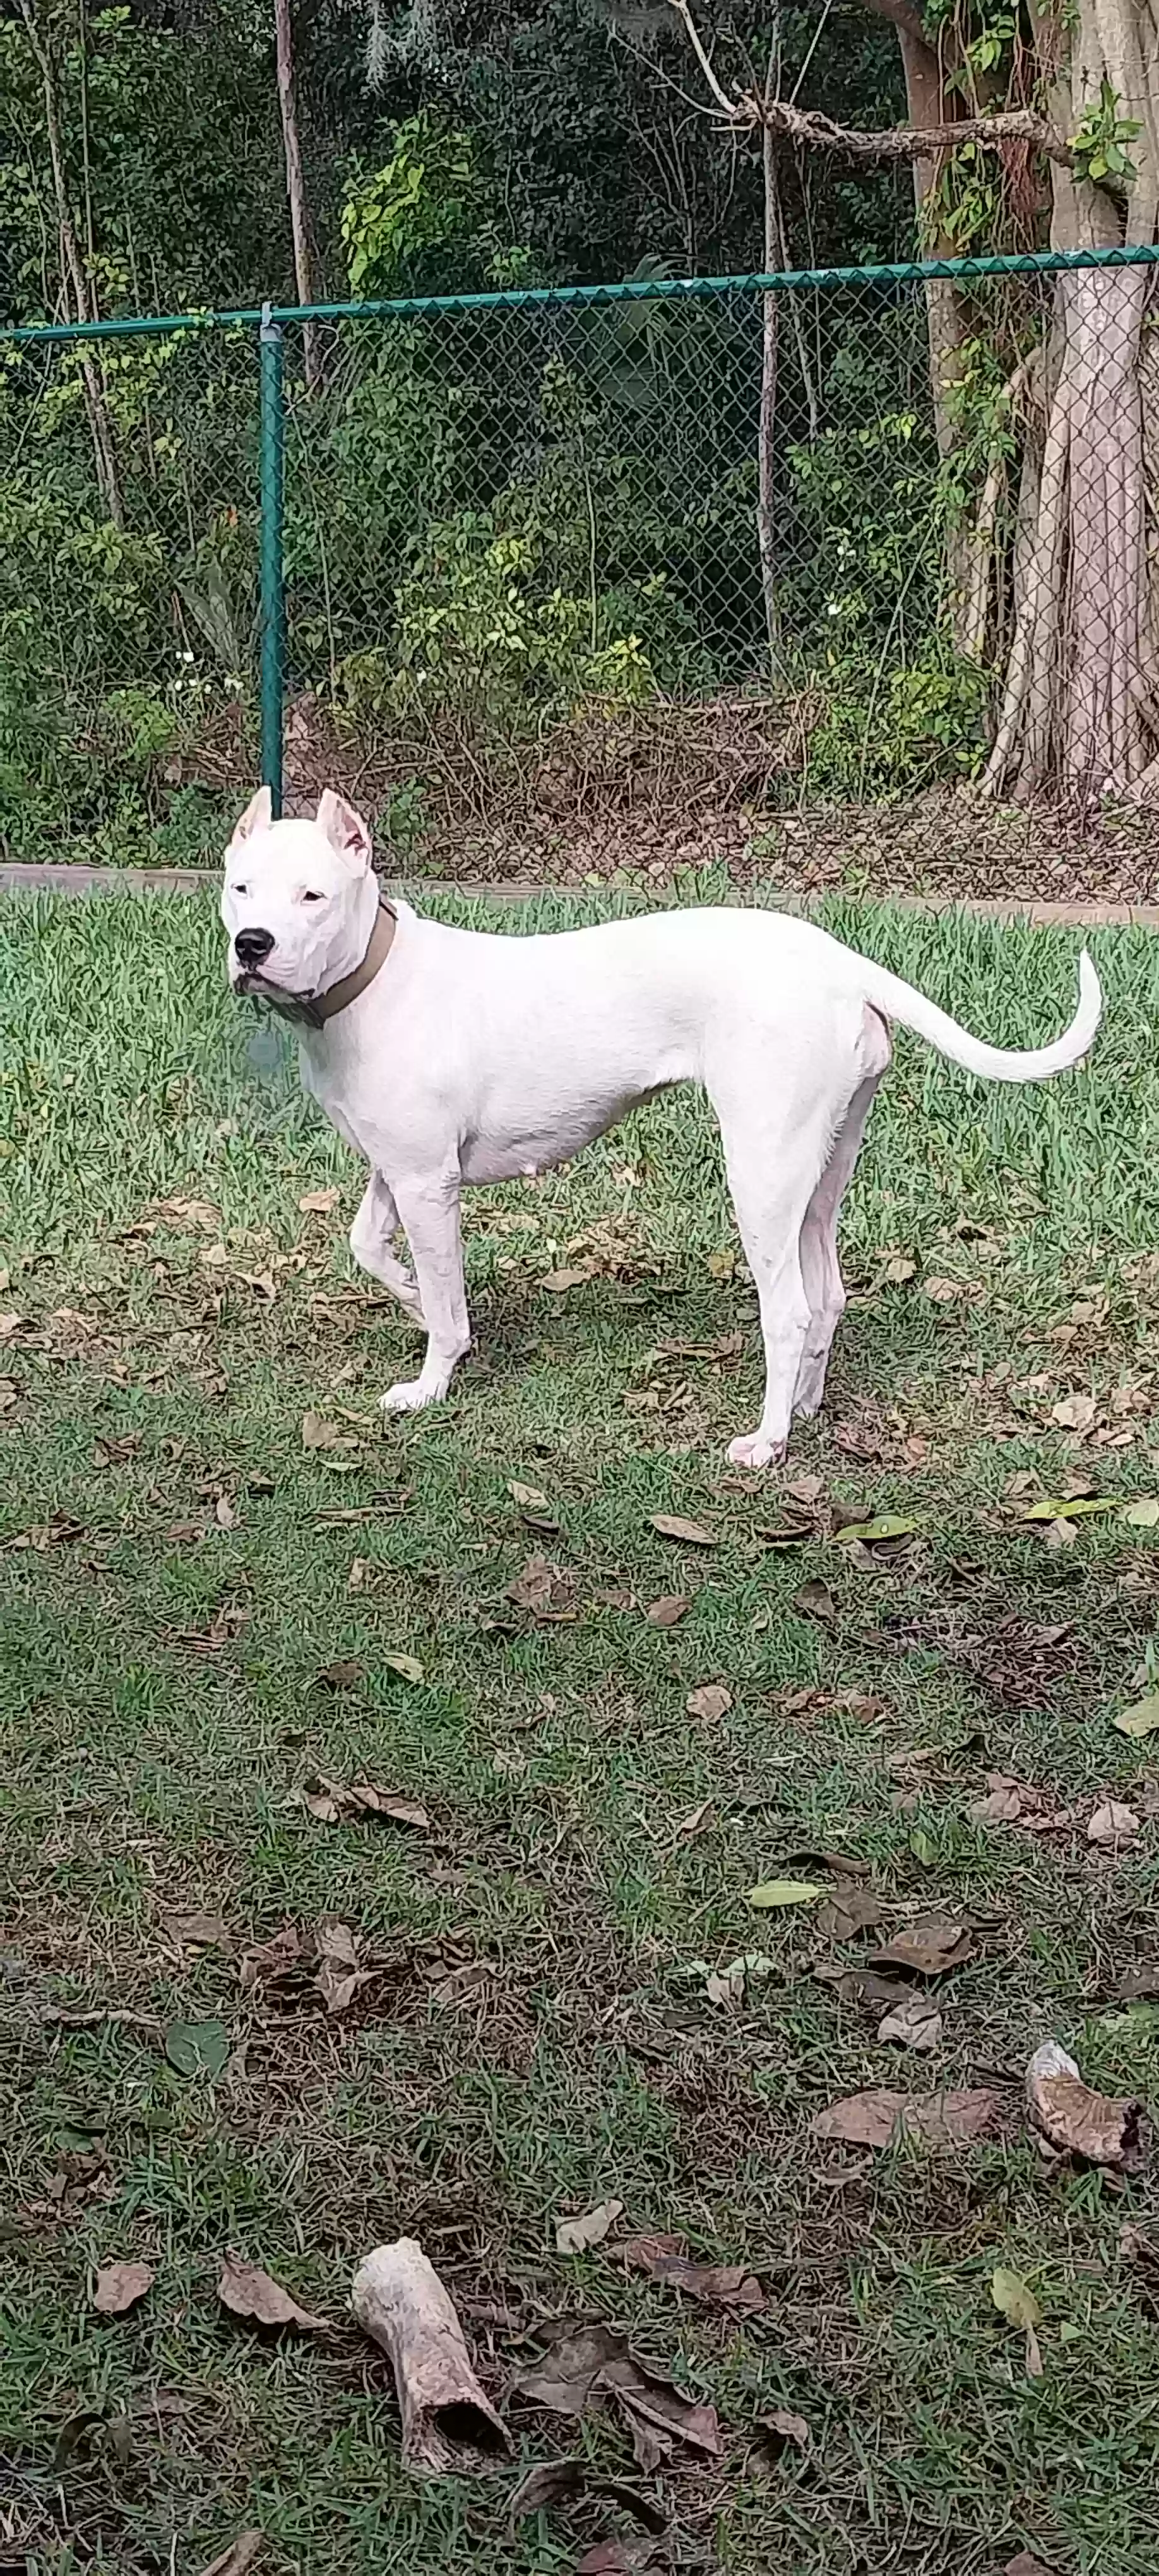 adoptable Dog in Miami,FL named Blanca